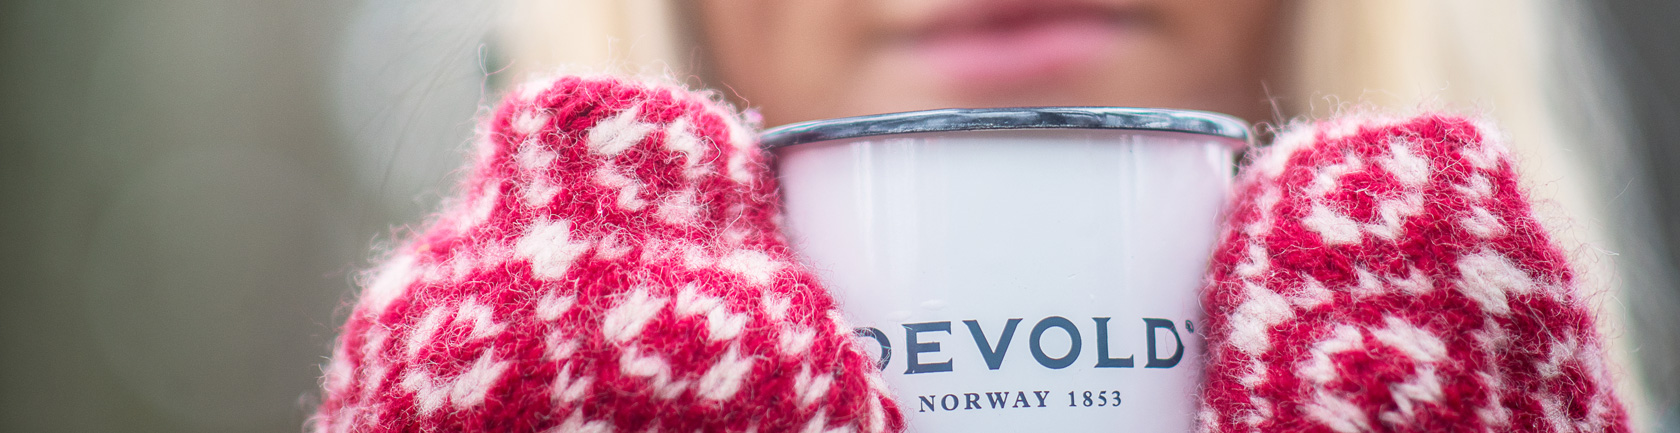 of - Norway Handschuhe Devold